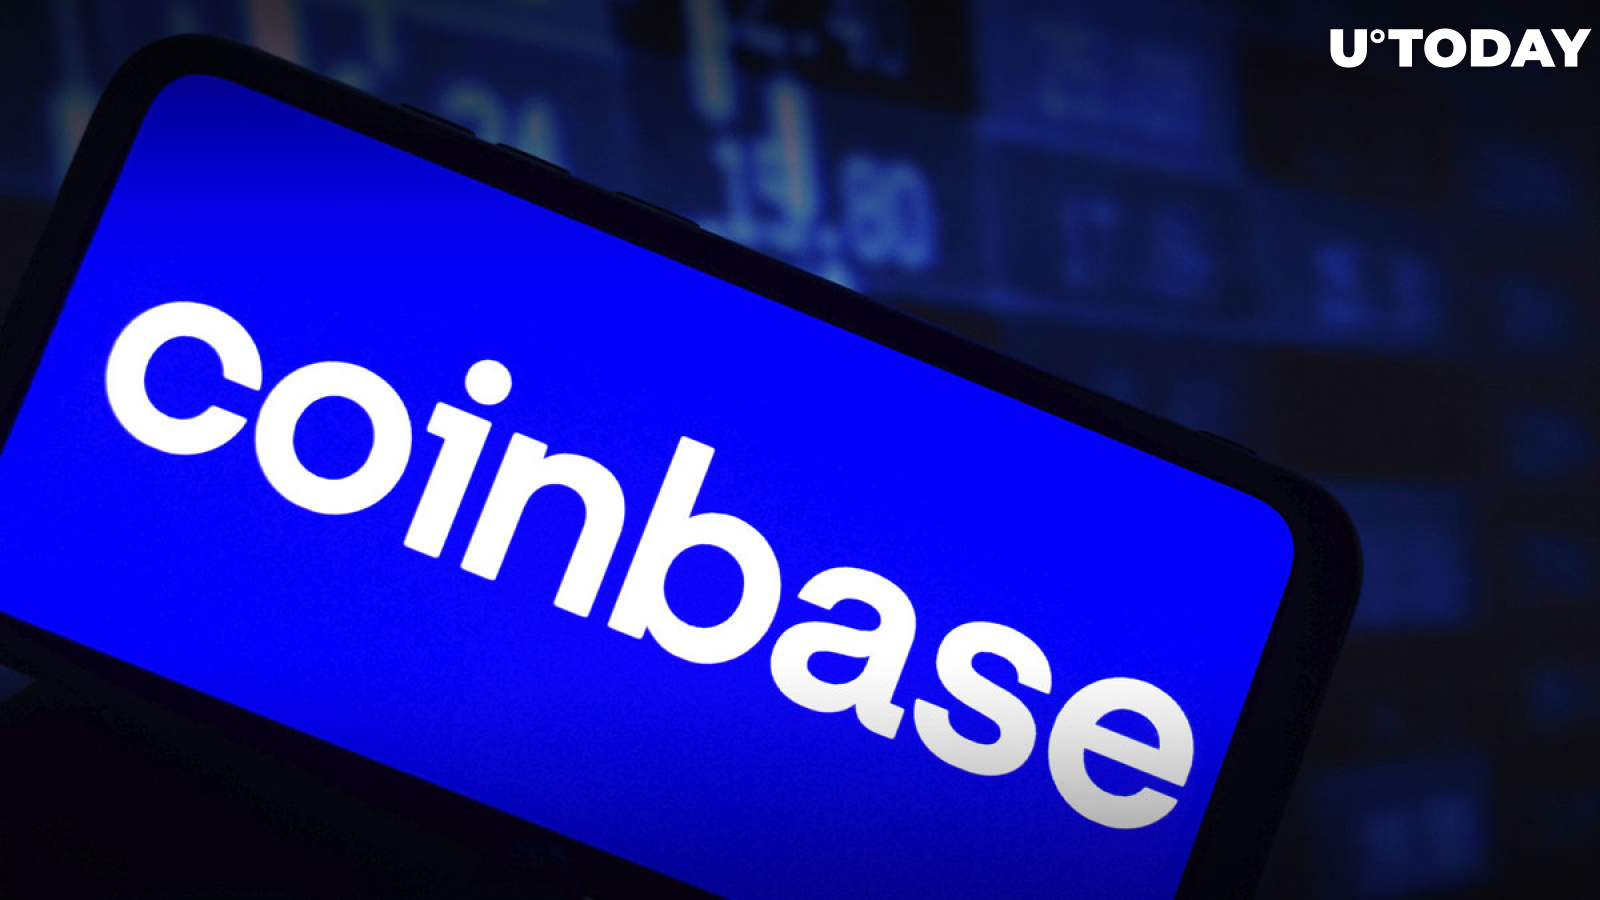 Coinbase Hits Back at SEC’s Crypto Custody Proposal 